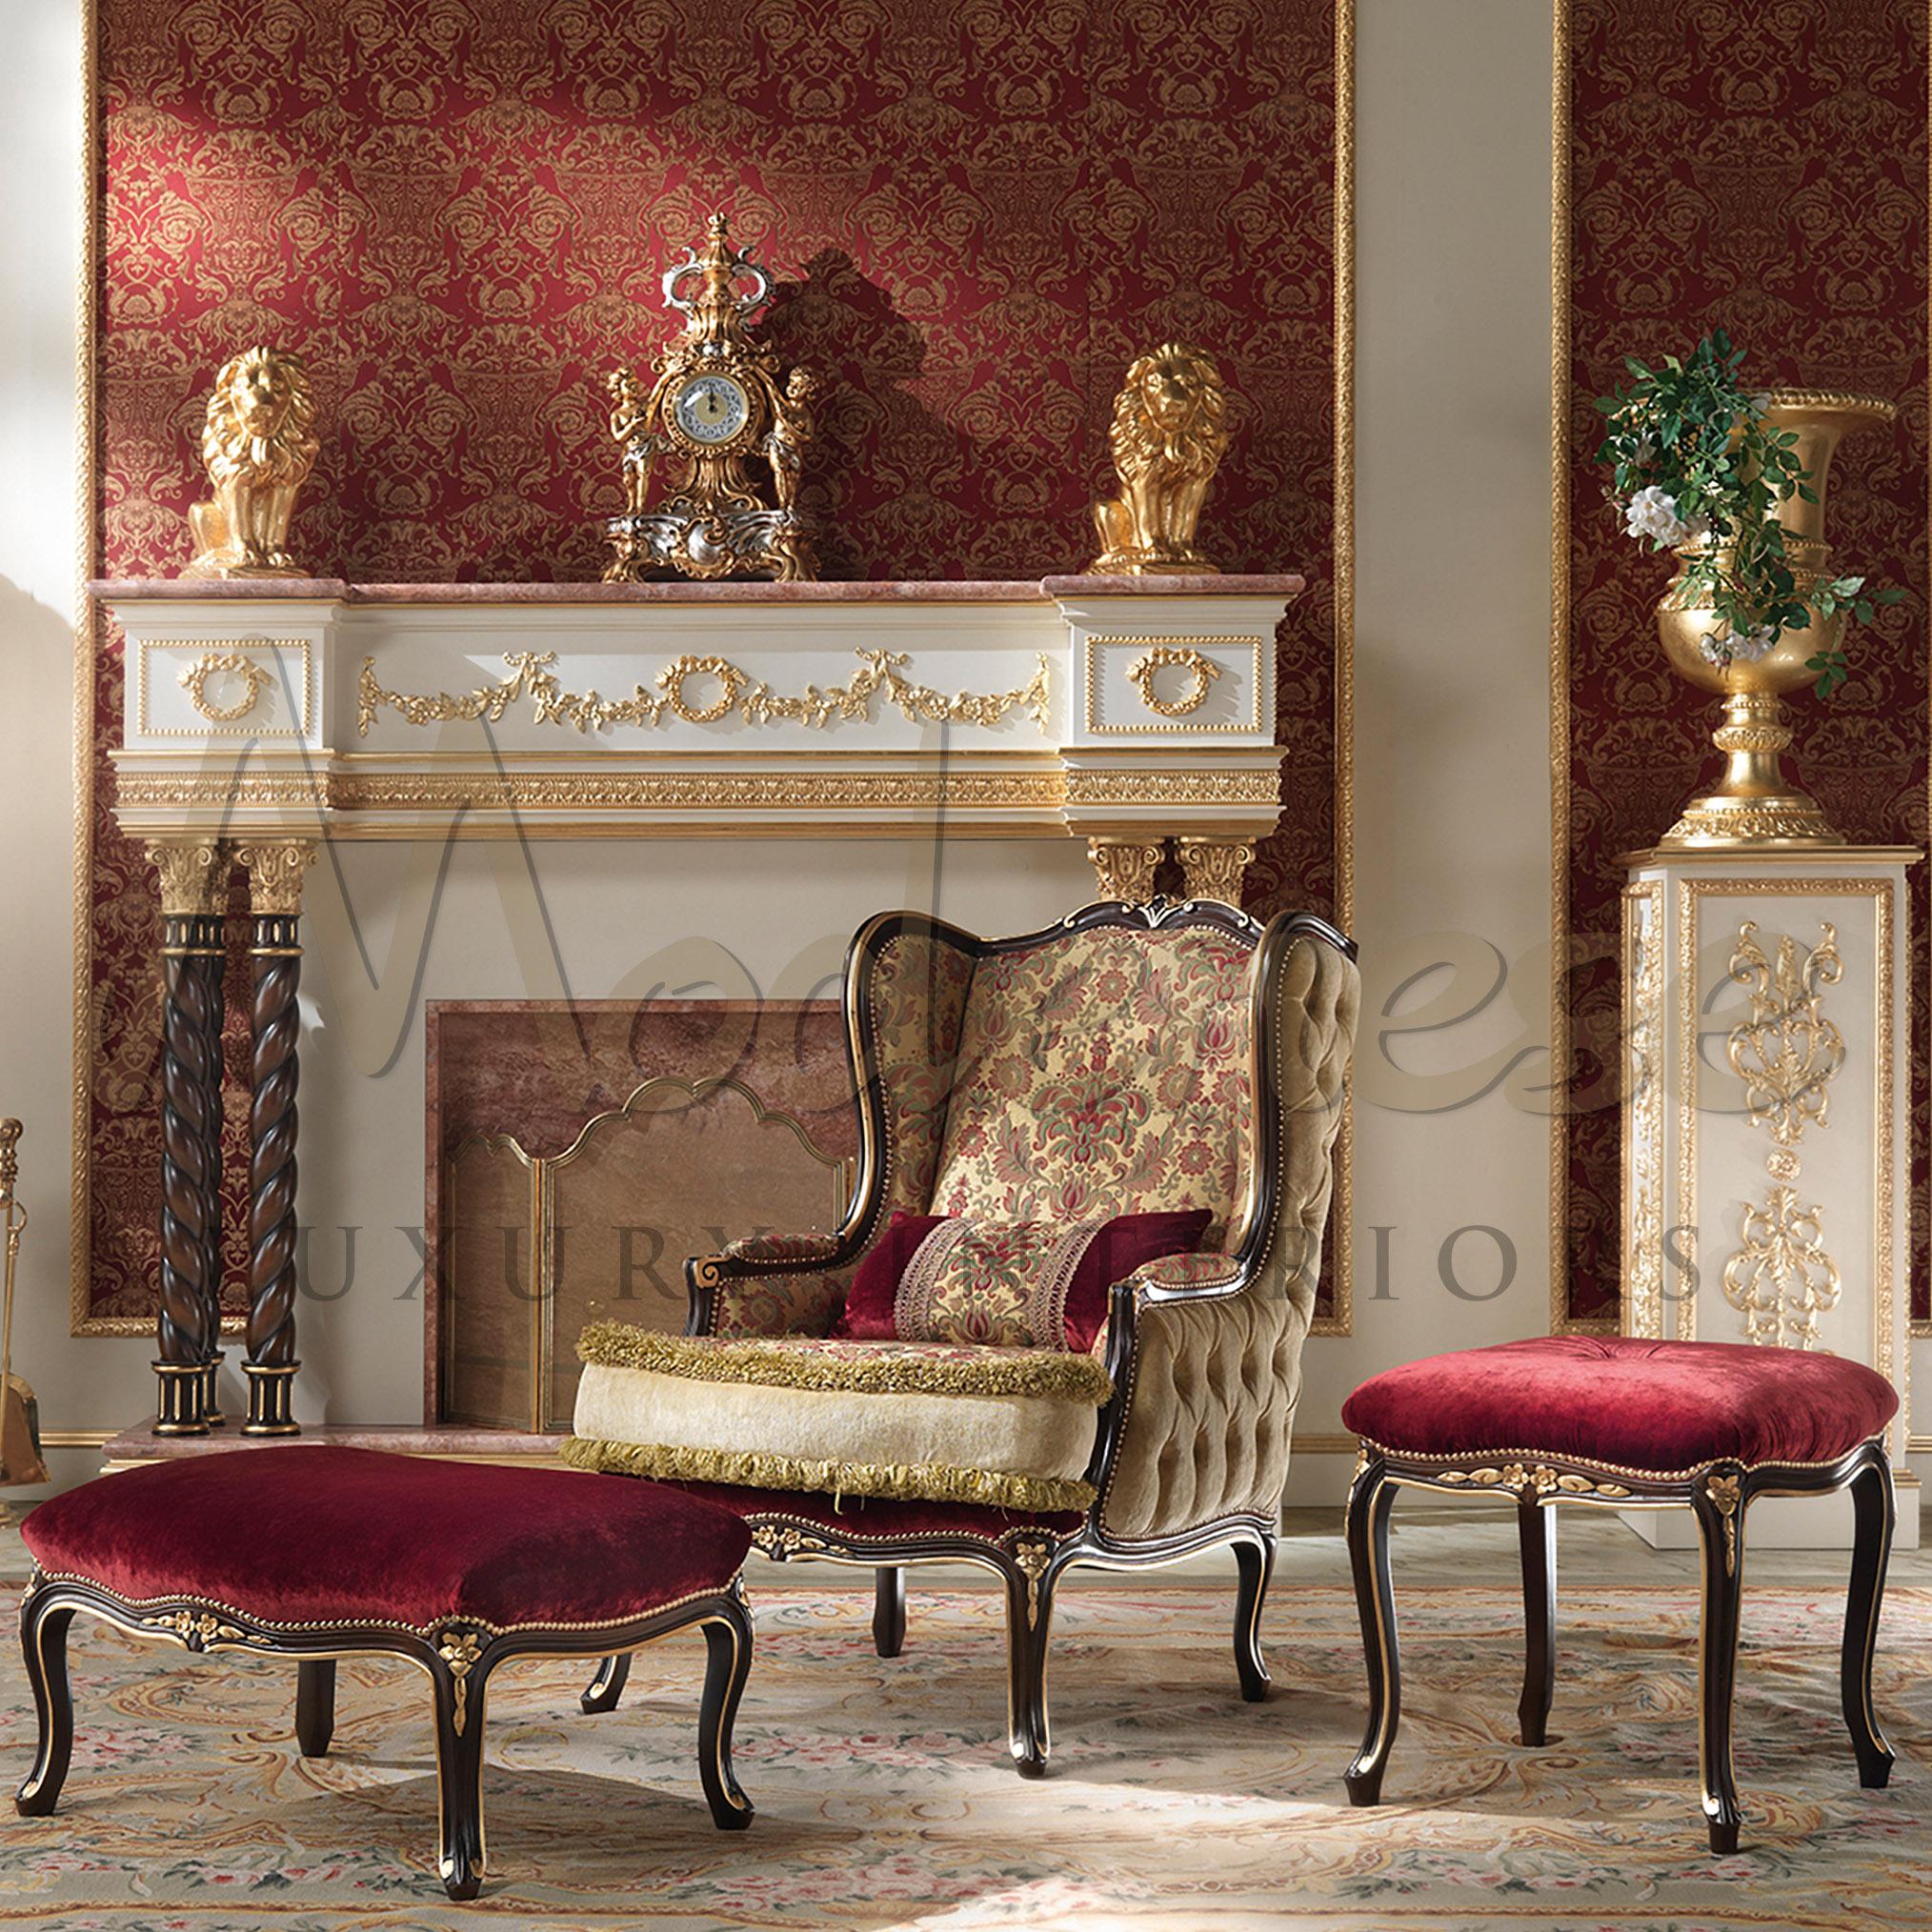 Utilisez votre temps libre à bon escient et de manière confortable : essayez de vous asseoir sur des tissus d'ameublement doux et délicats, comme les élégants poufs de Modenese Interiors, fabricant de meubles haut de gamme de Padoue, en Italie. Cet